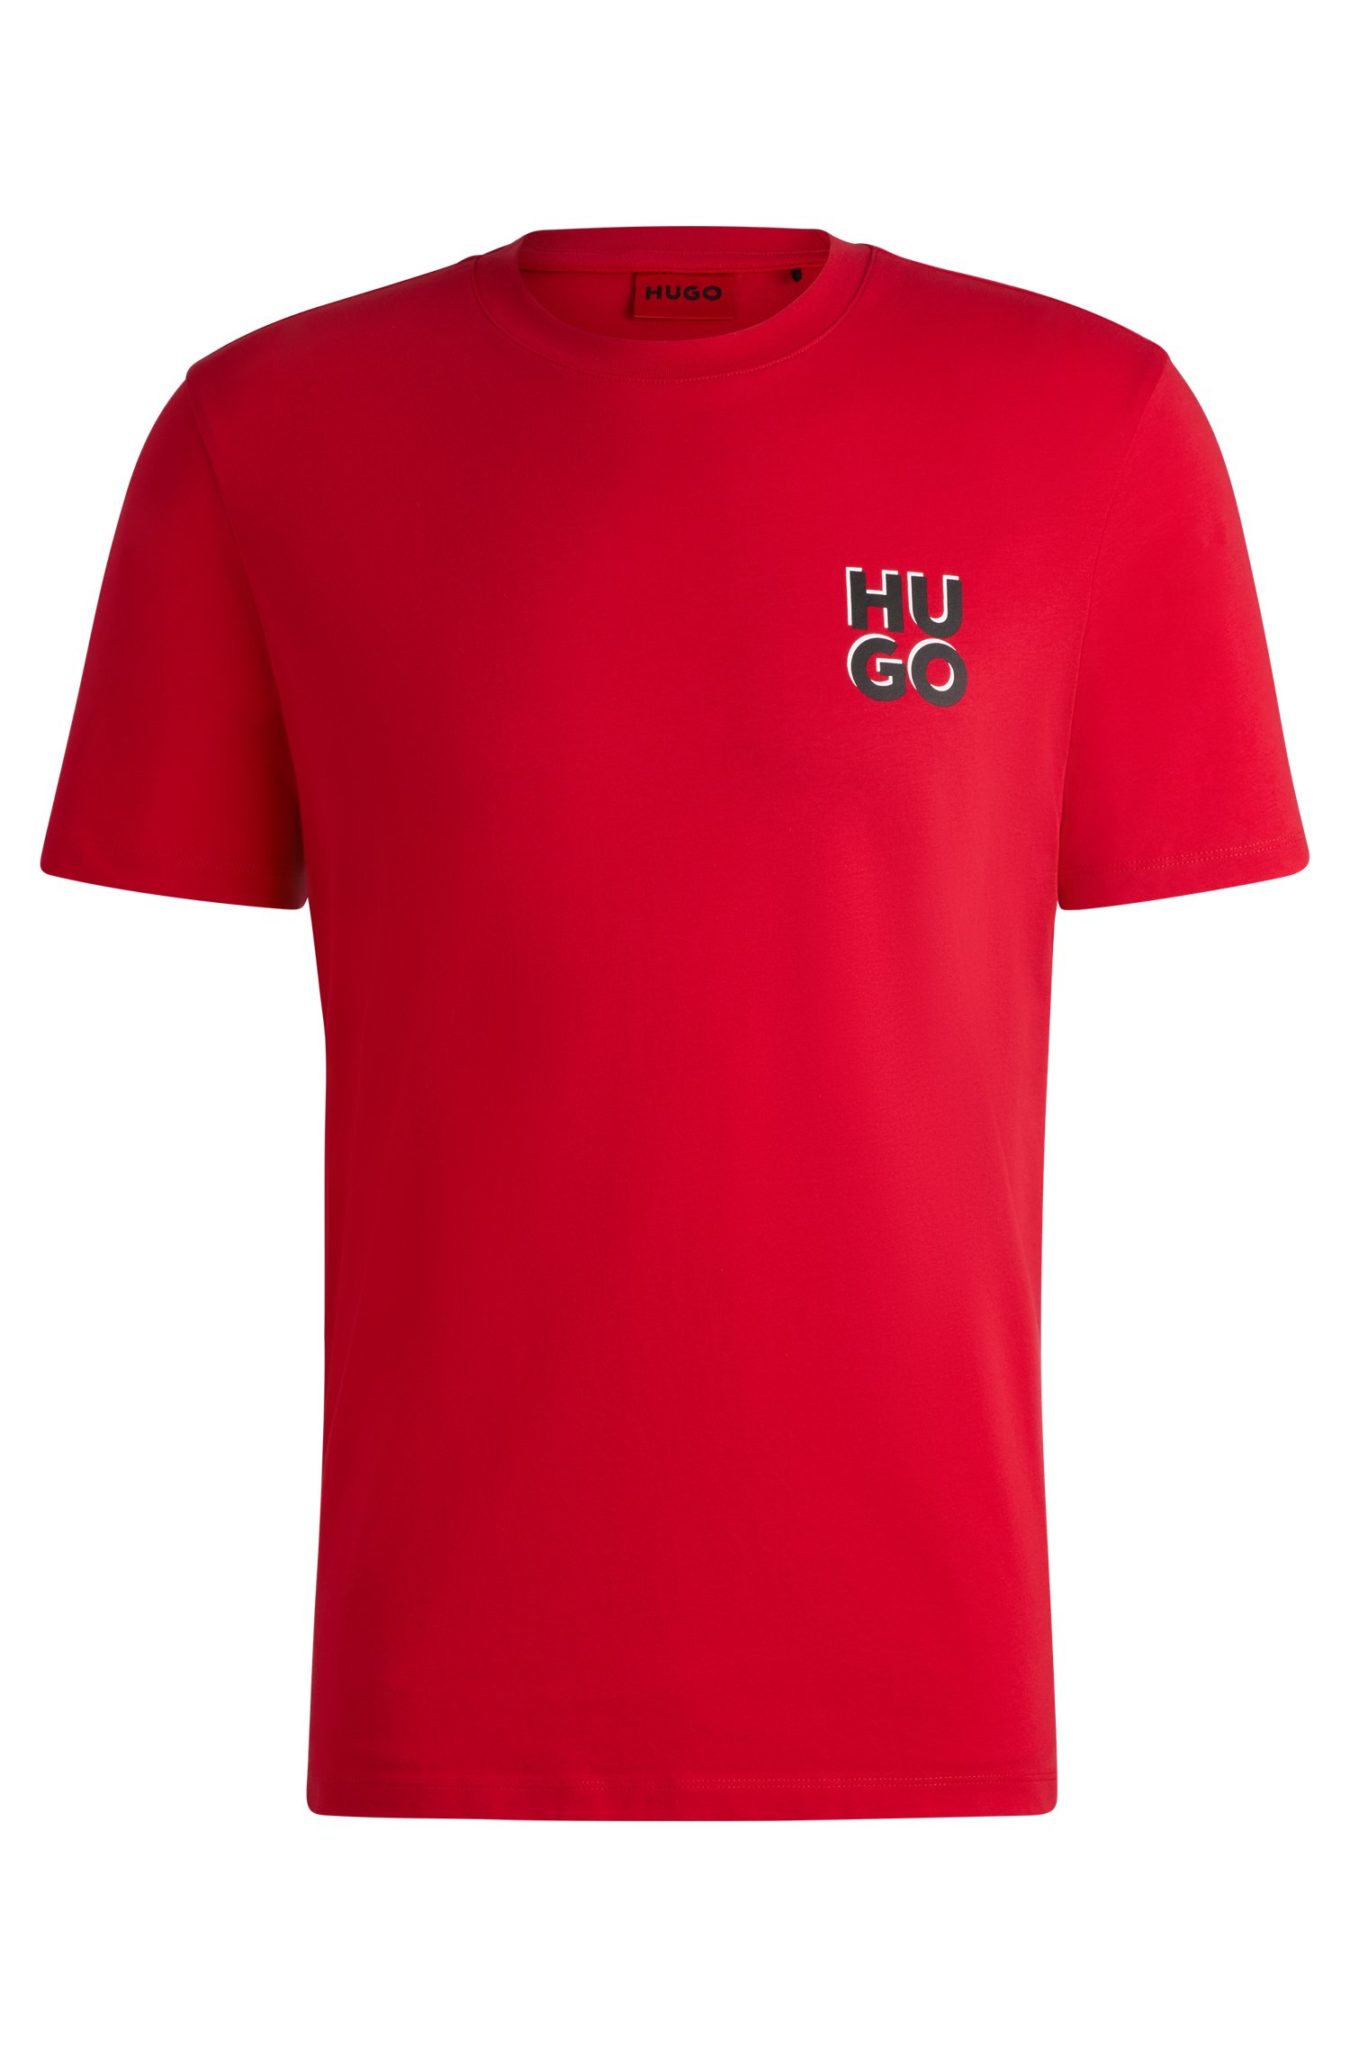 Hugo Boss T-shirt en jersey de coton avec logo revisité imprimé